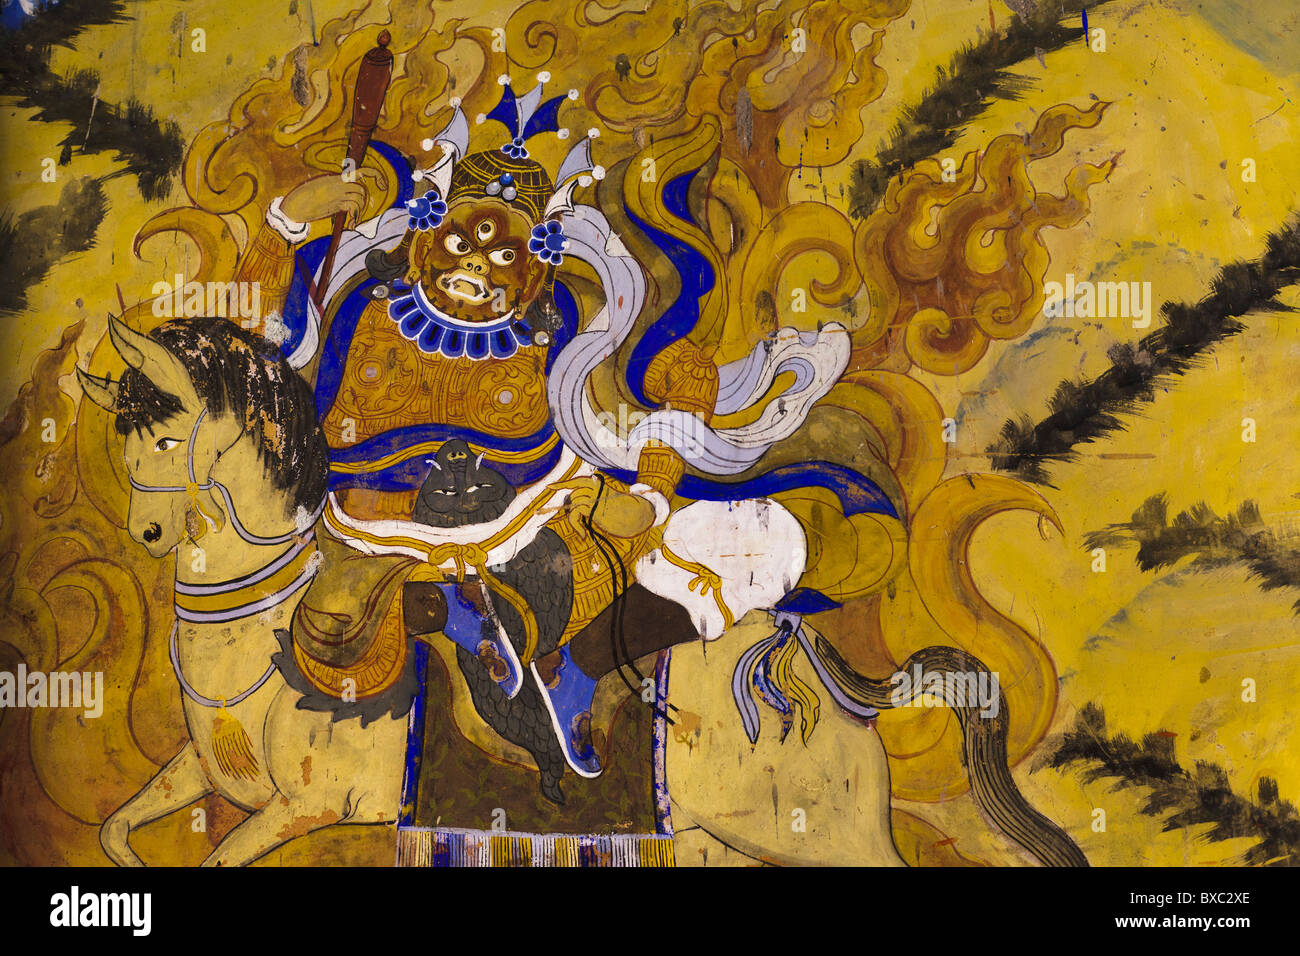 Peinture d'une déité bouddhiste mahakala sur un cheval avec des flammes jaunes autour de lui Banque D'Images